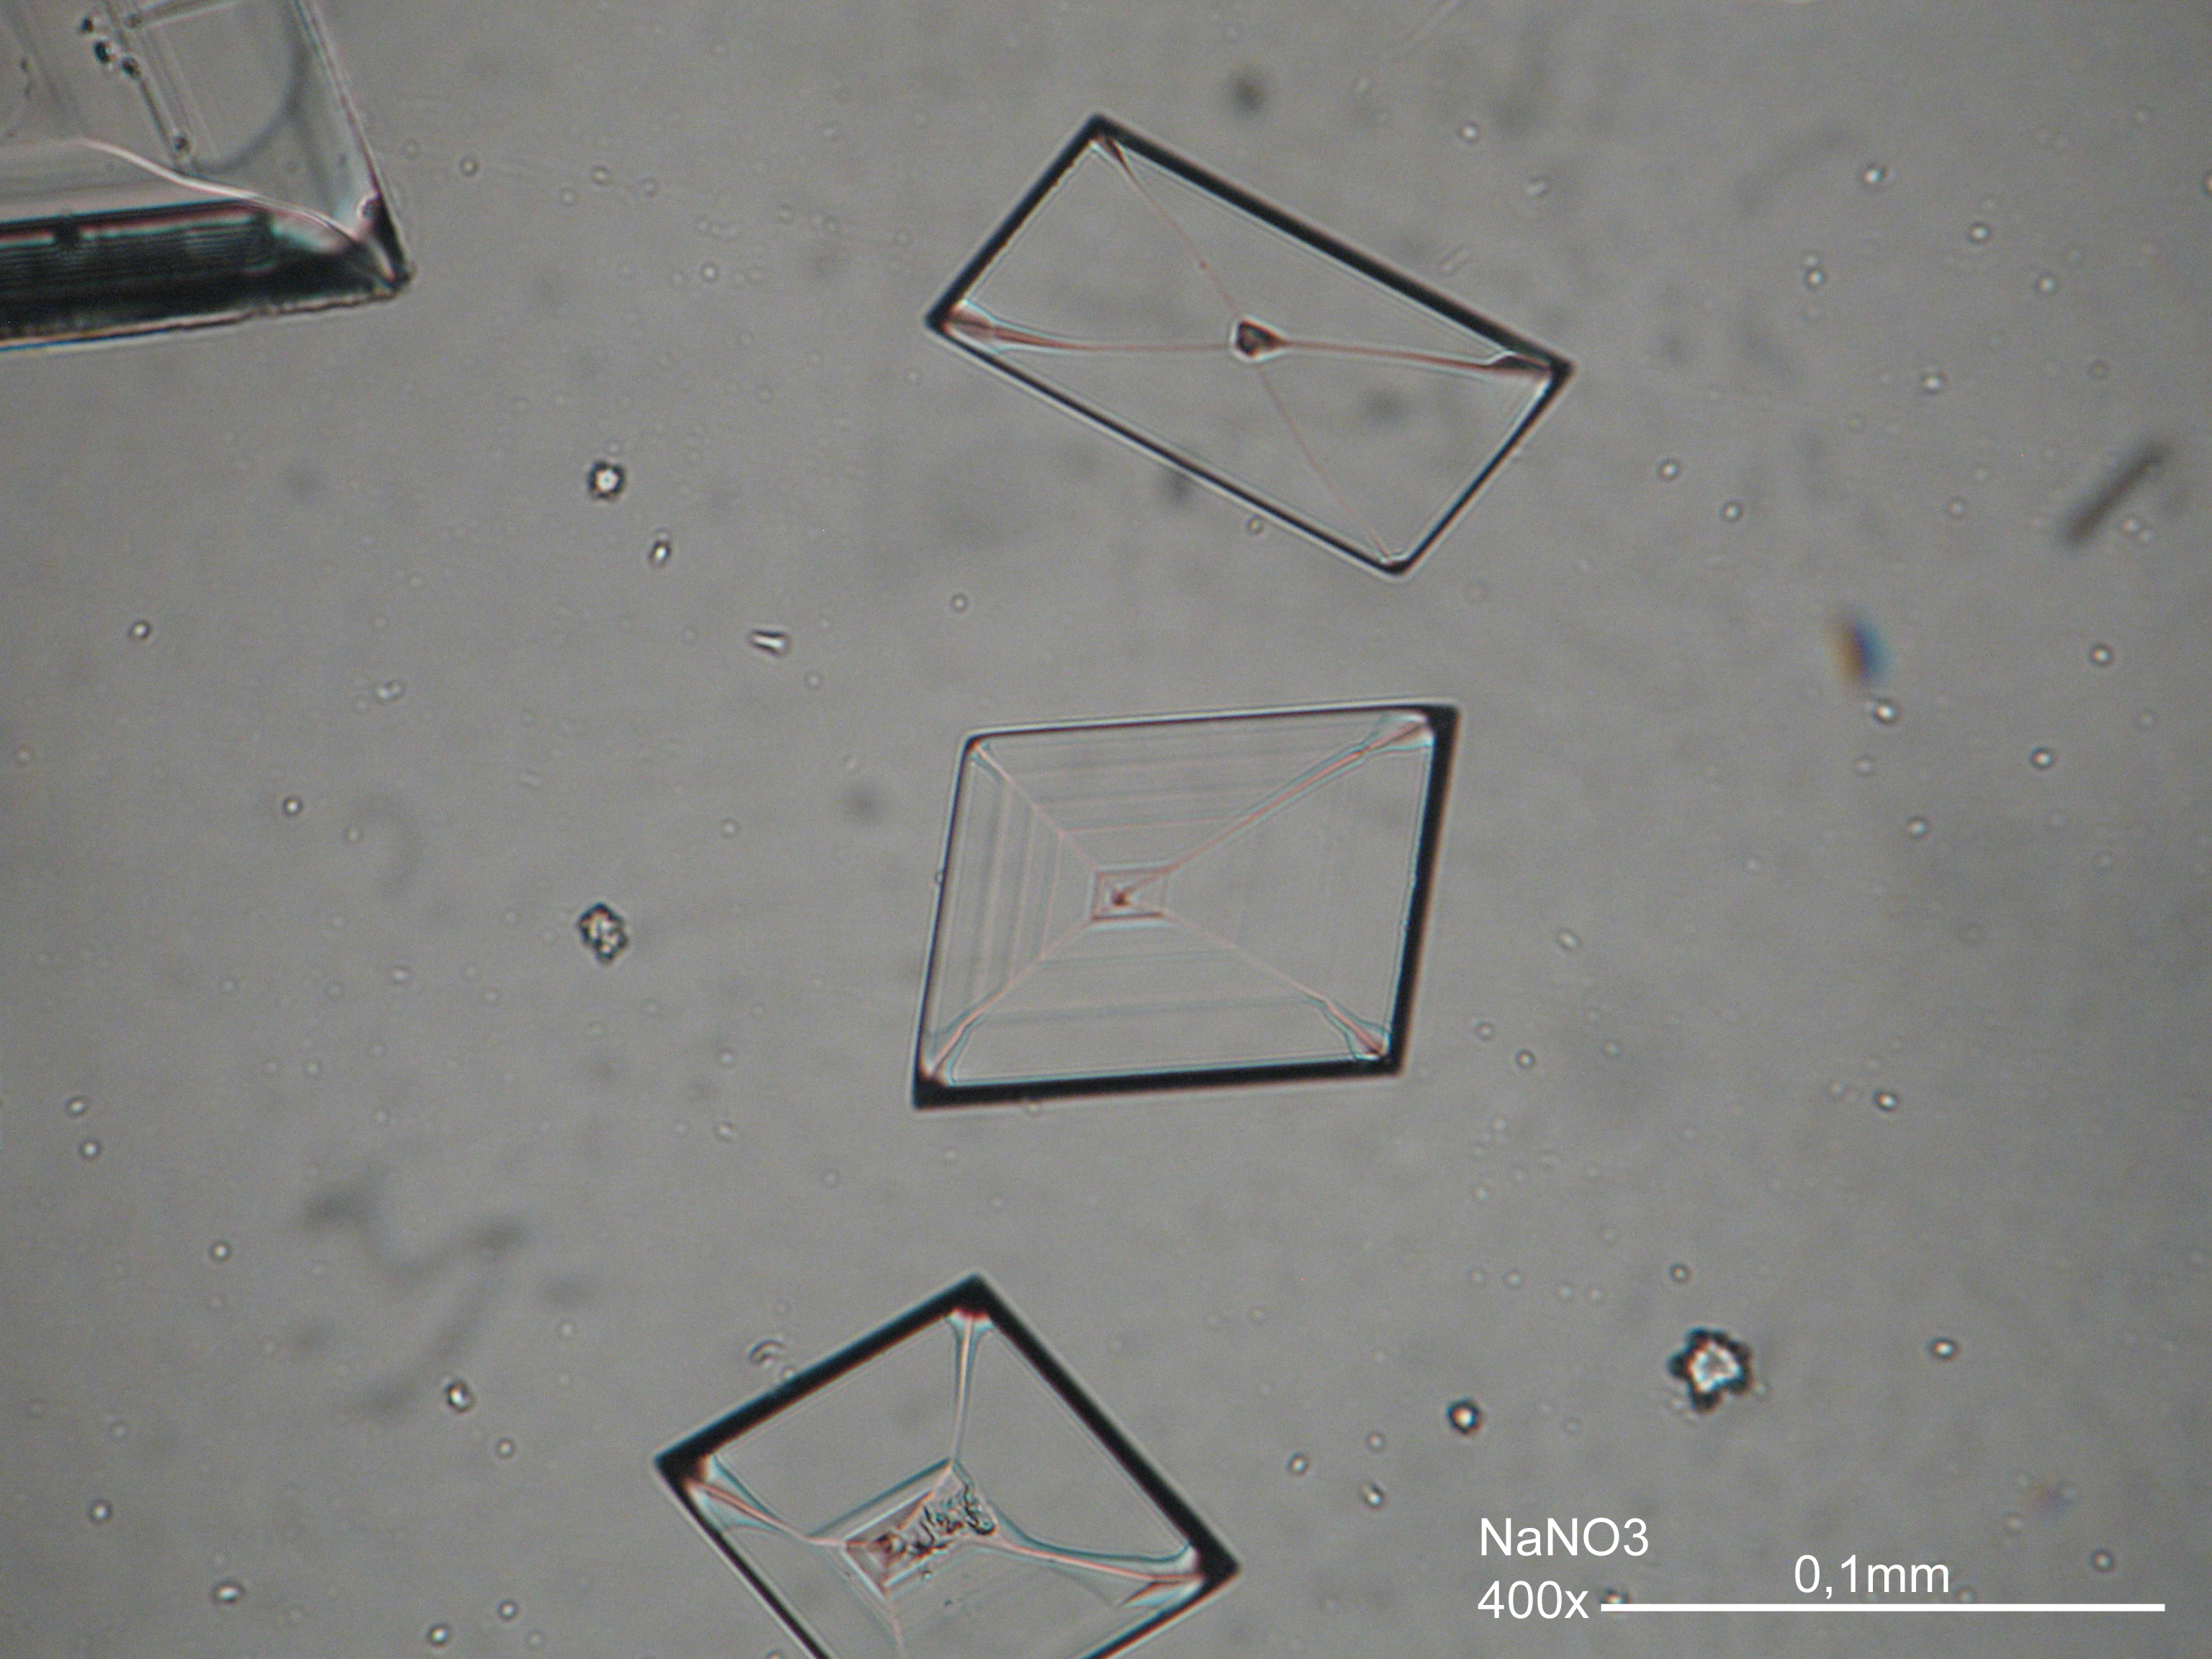 Nitronatrit, auskristallisiert aus wässriger Lösung auf einem Objektträger